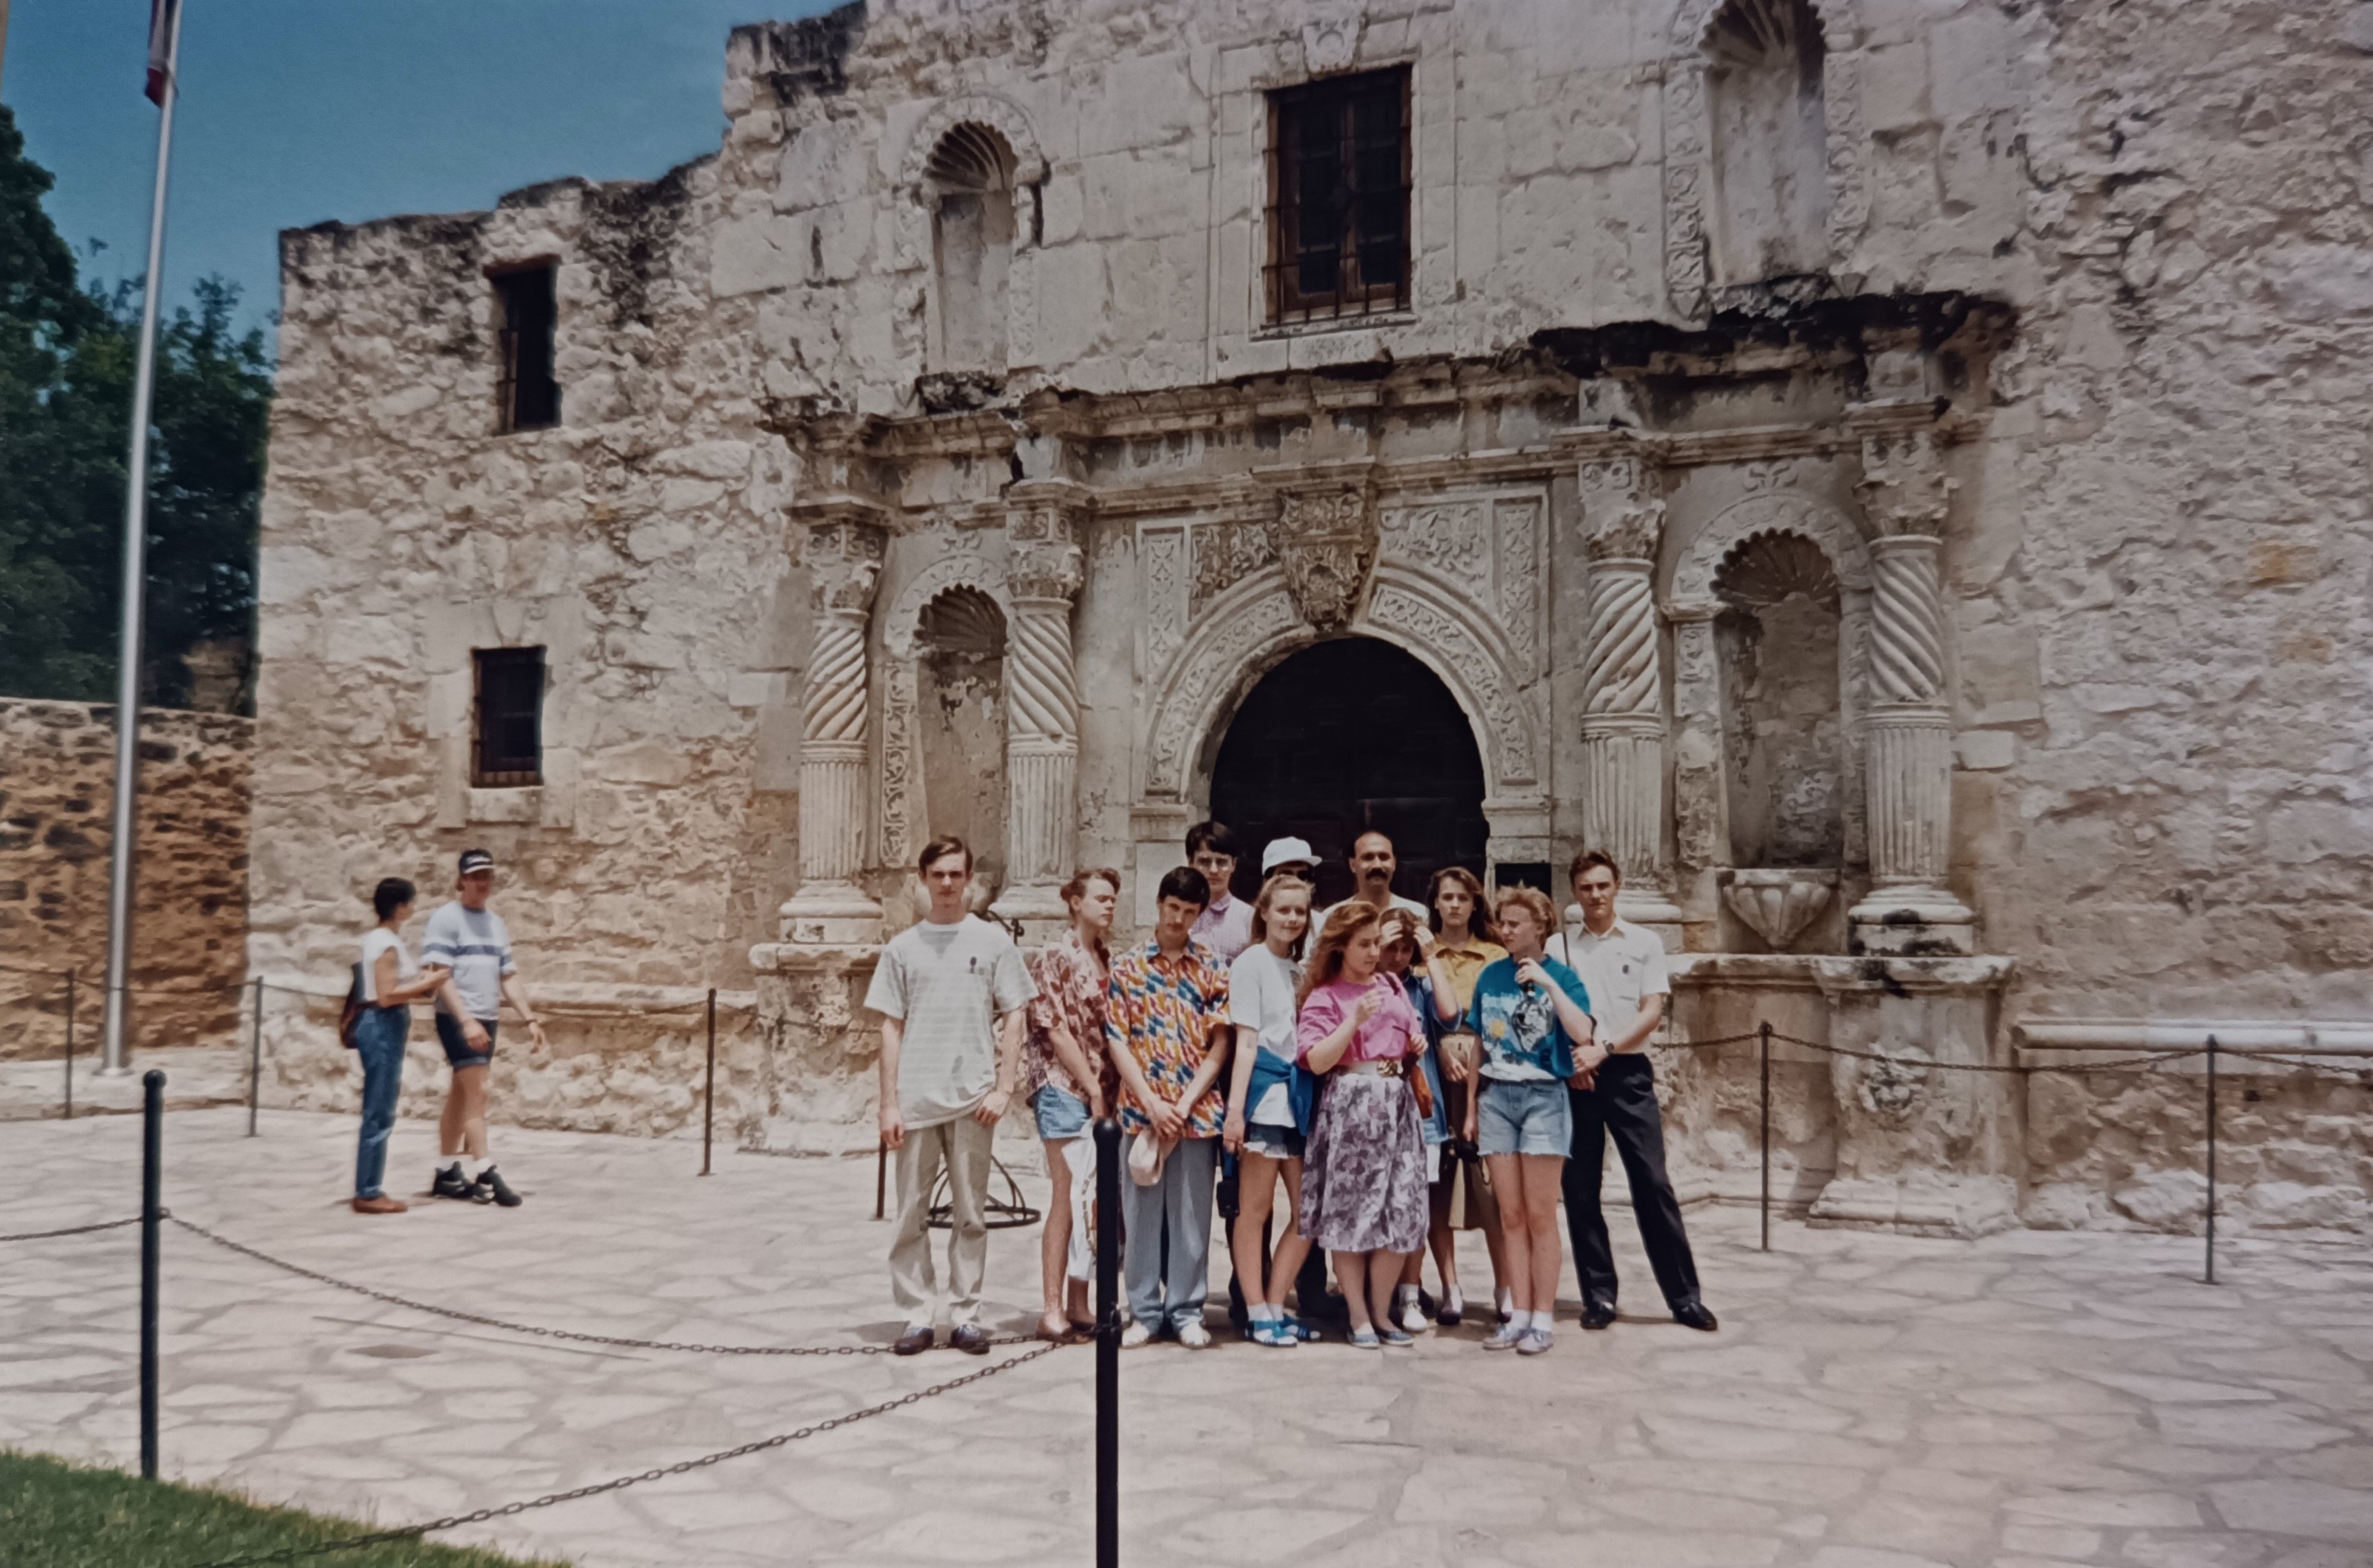 Миссия Аламо, Сан-Антонио, Техас, май 1993